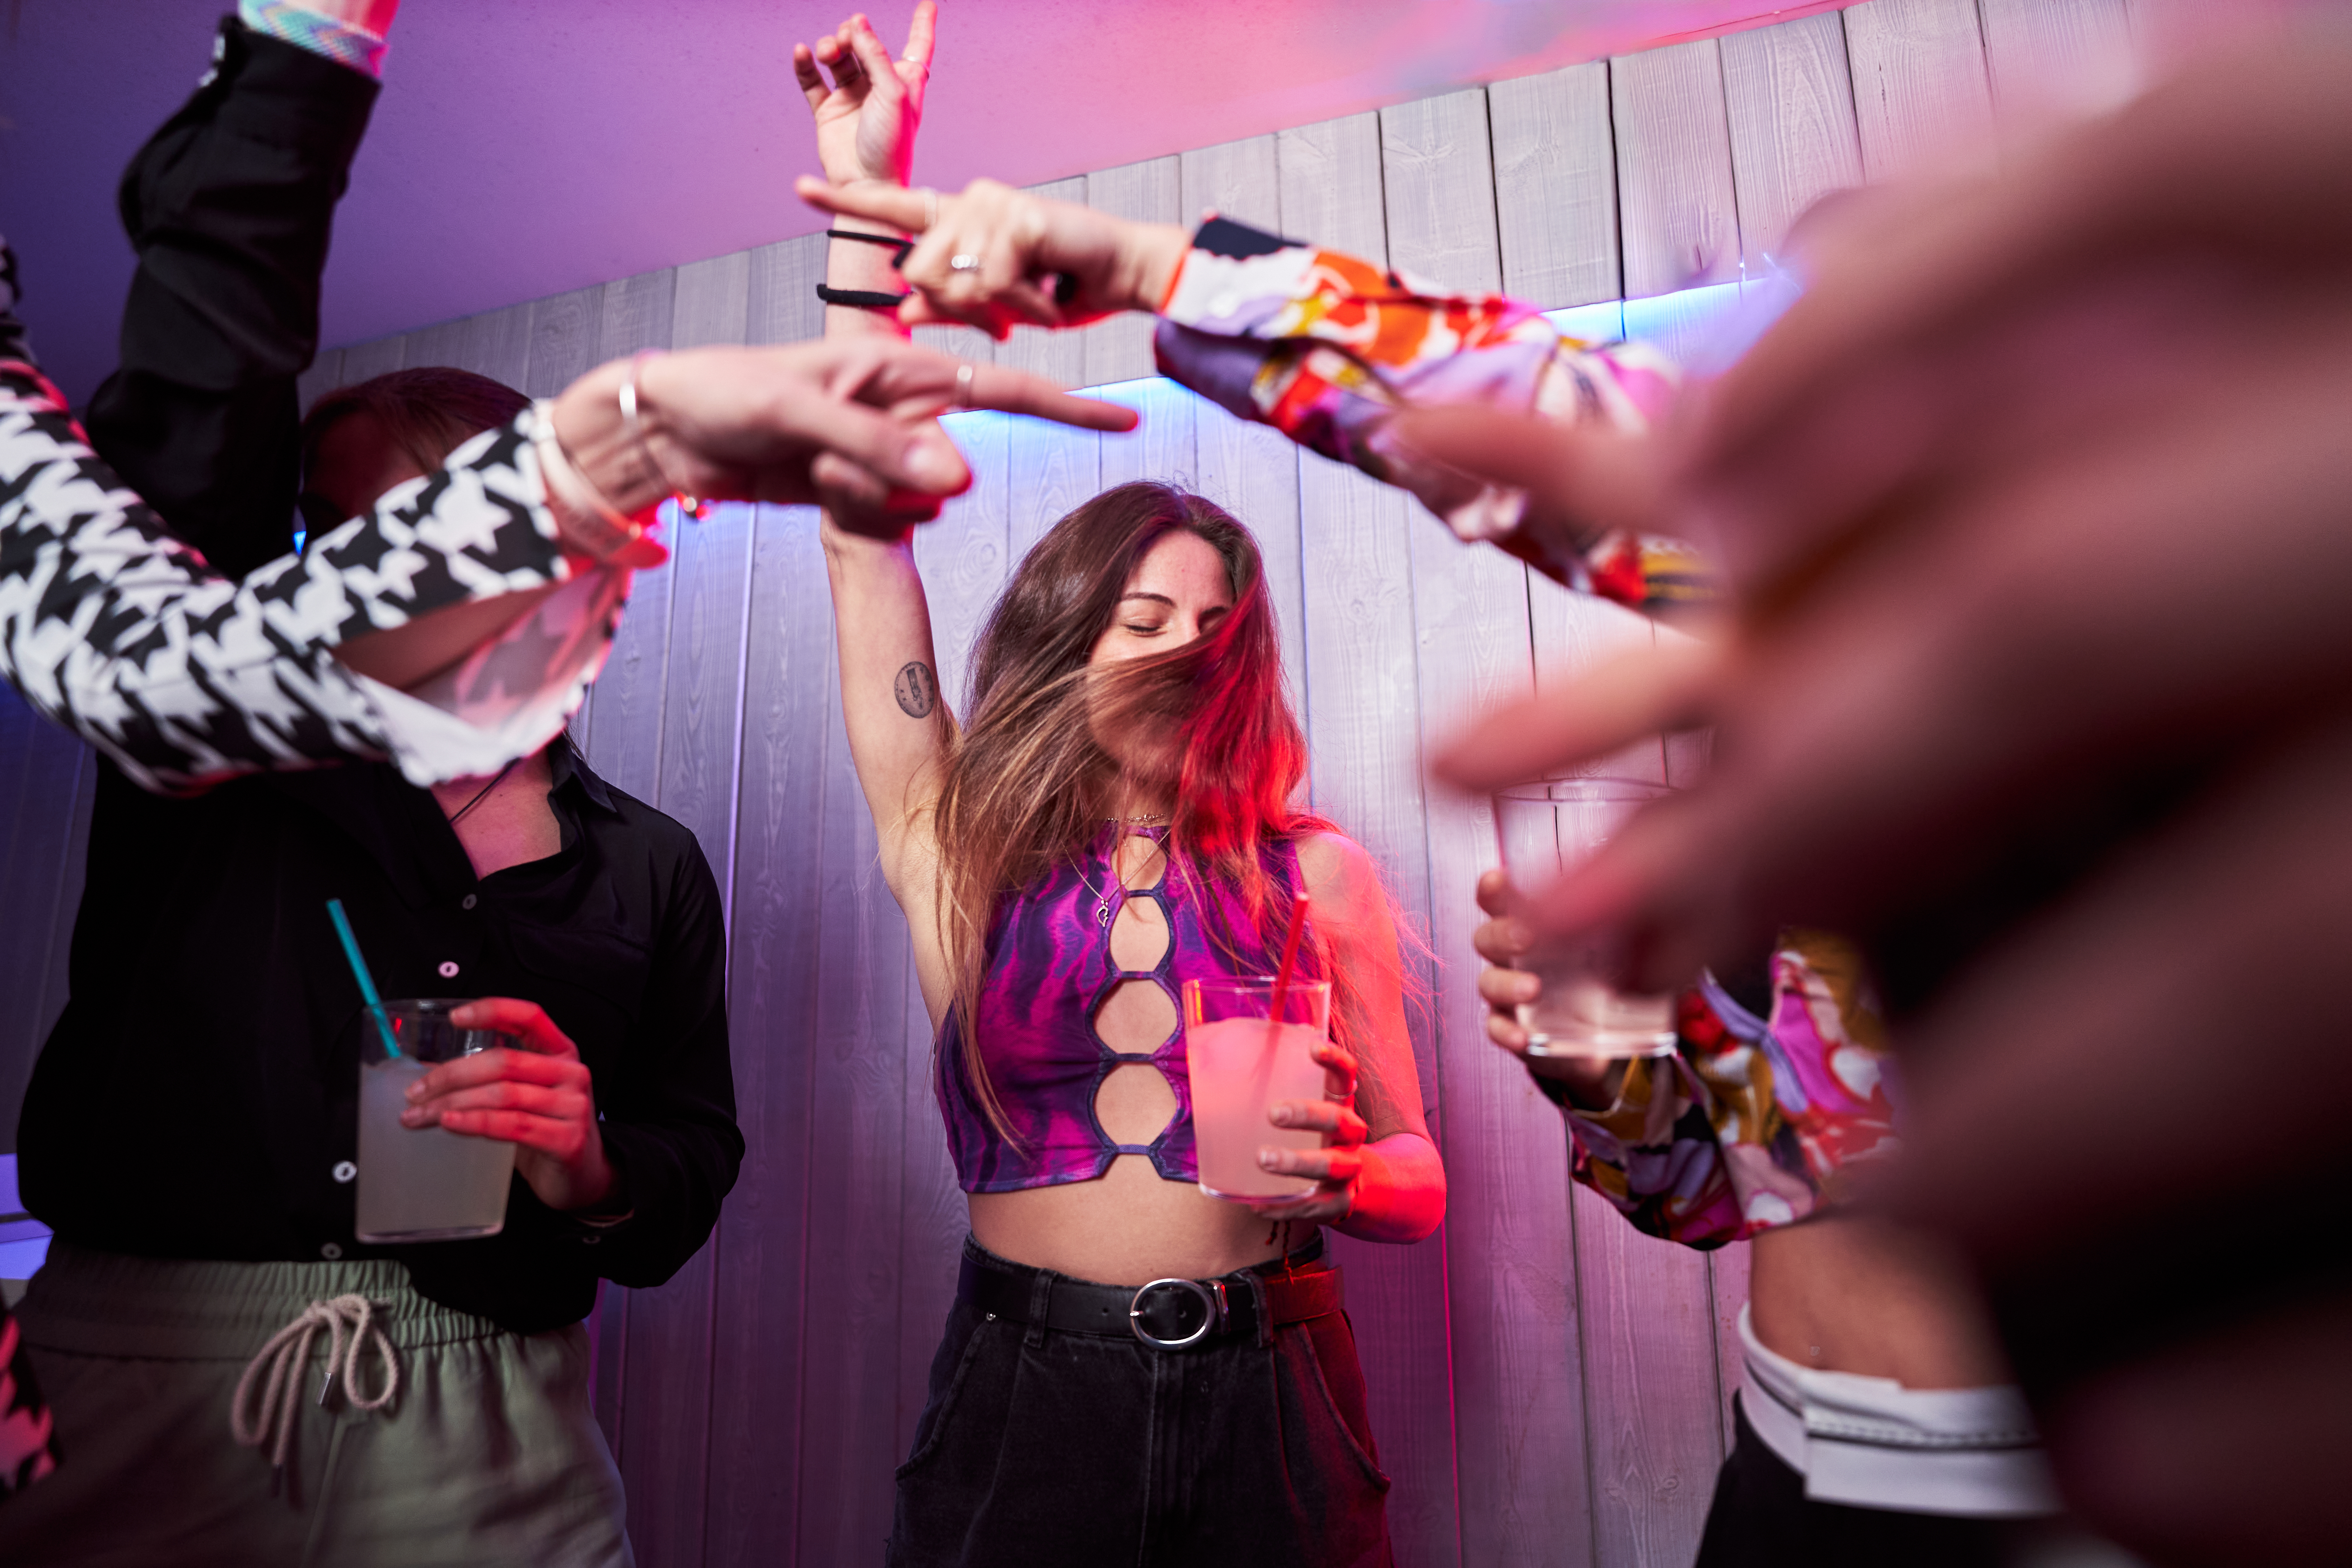 Glückliche Freunde tanzen zusammen in einem Nachtclub | Quelle: Getty Images